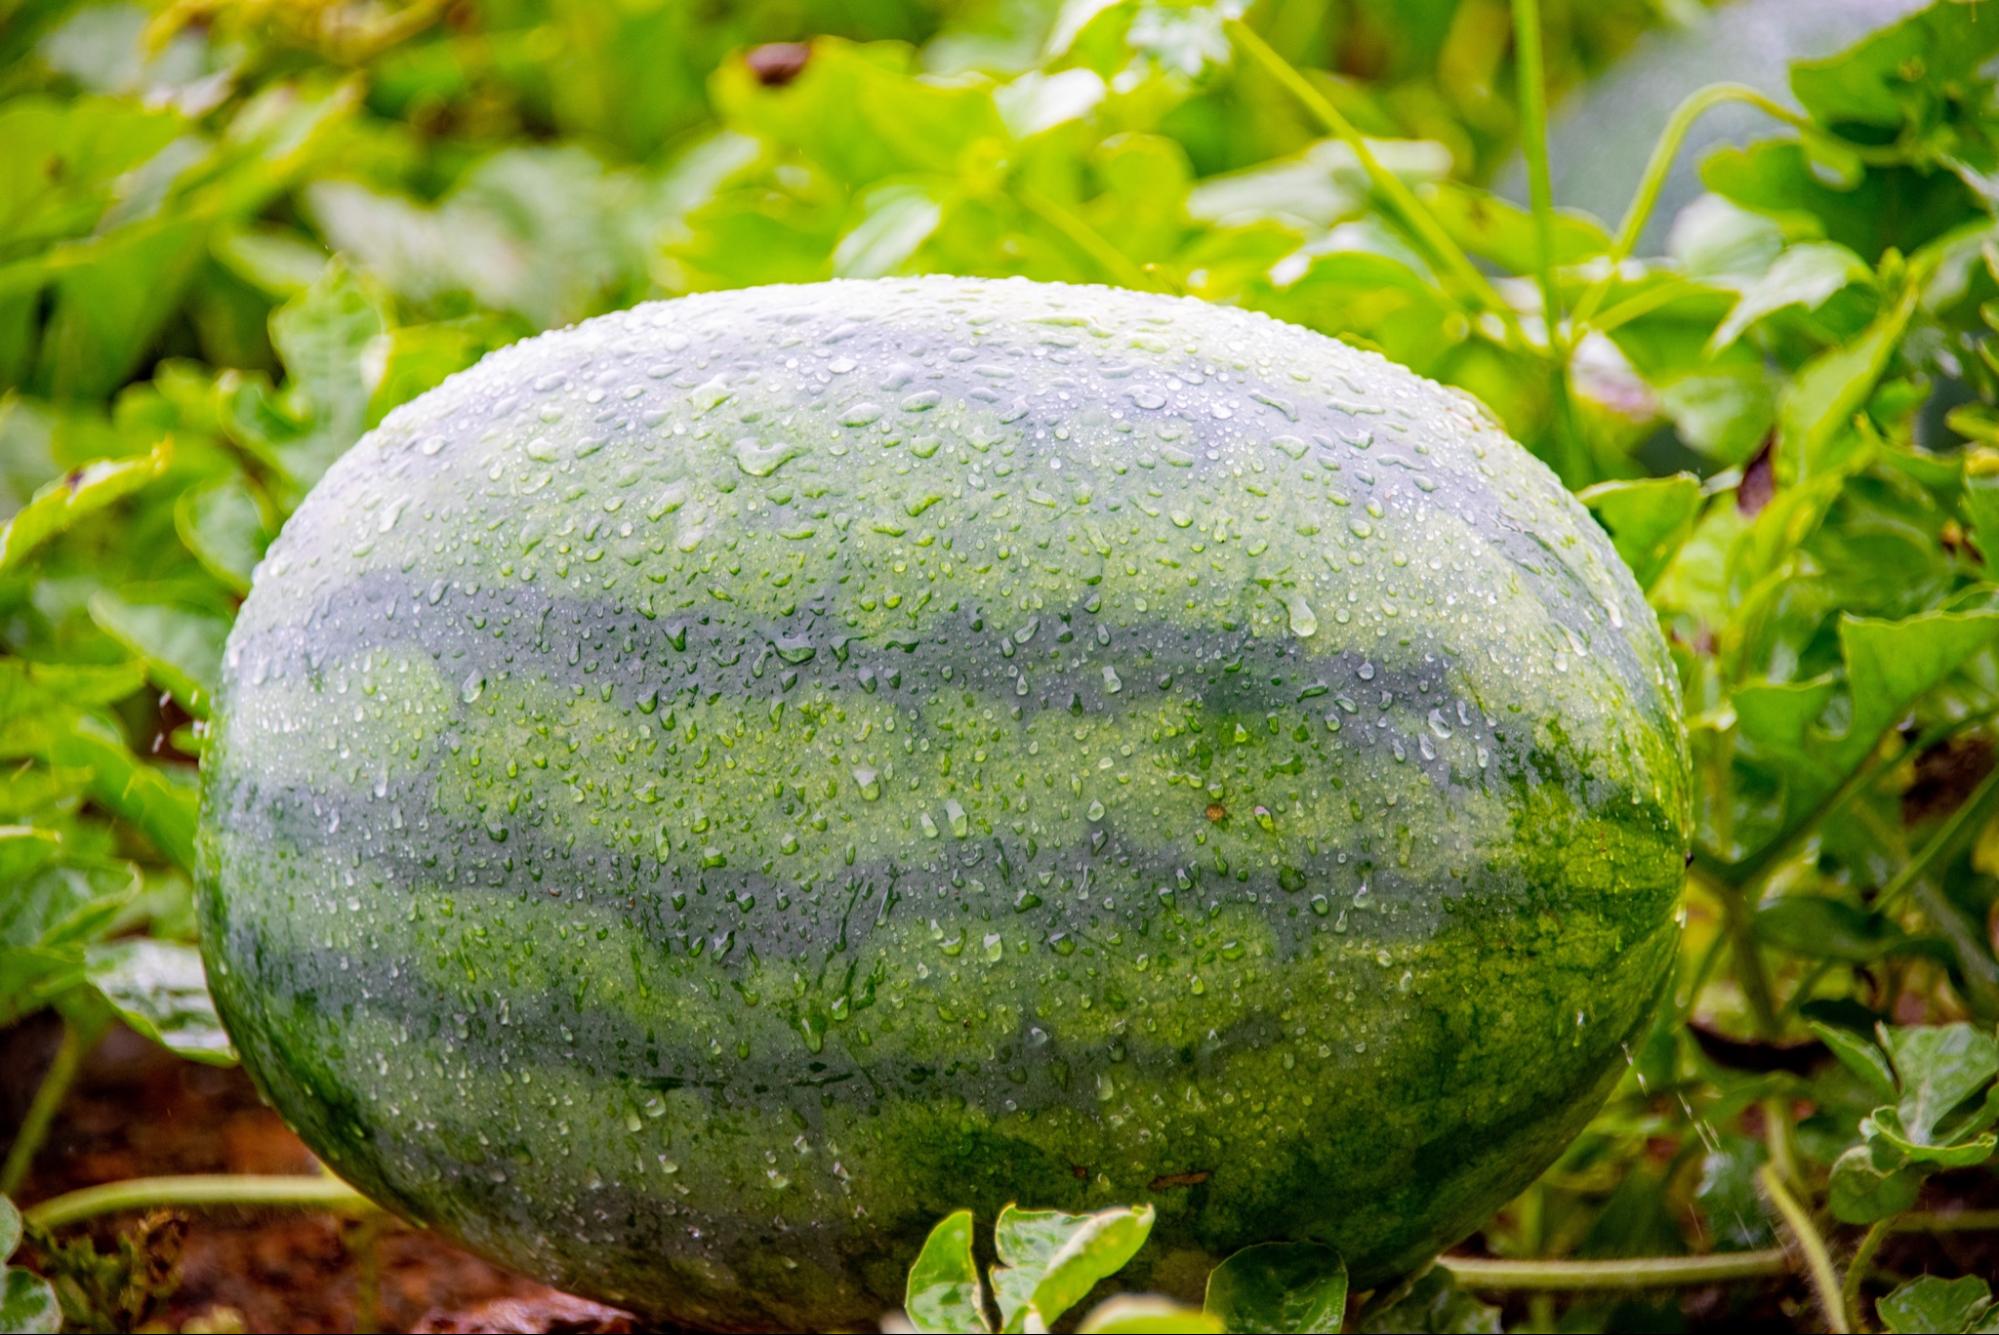 melon farming in malaysia - watermelon